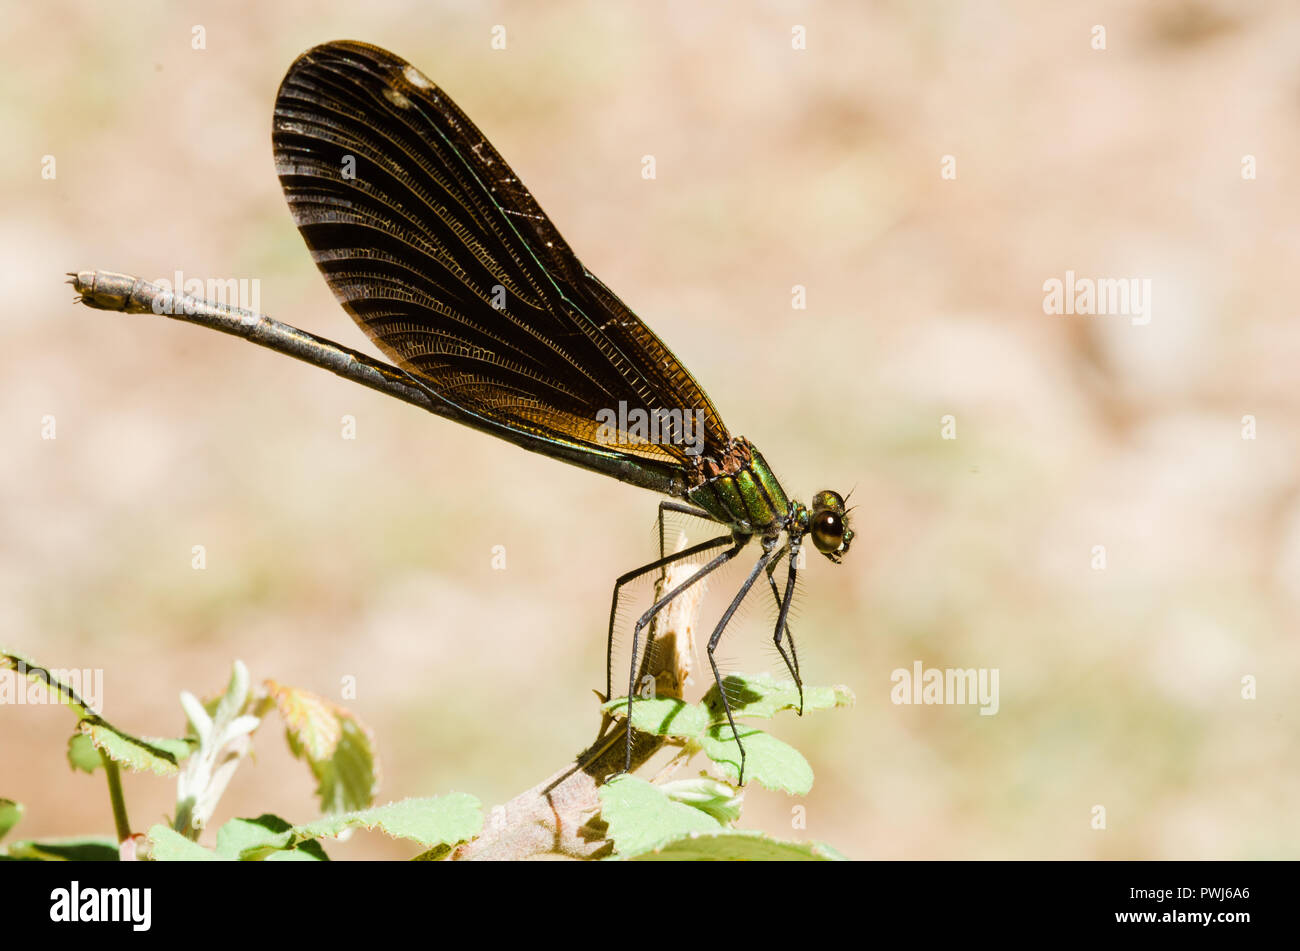 Libelle Fotografie, Schwarz Gelb, Grün, Blau und Rot, Dragonfly, Nahaufnahme, klaren Hintergrund und bokeh Pflanzen Stockfoto